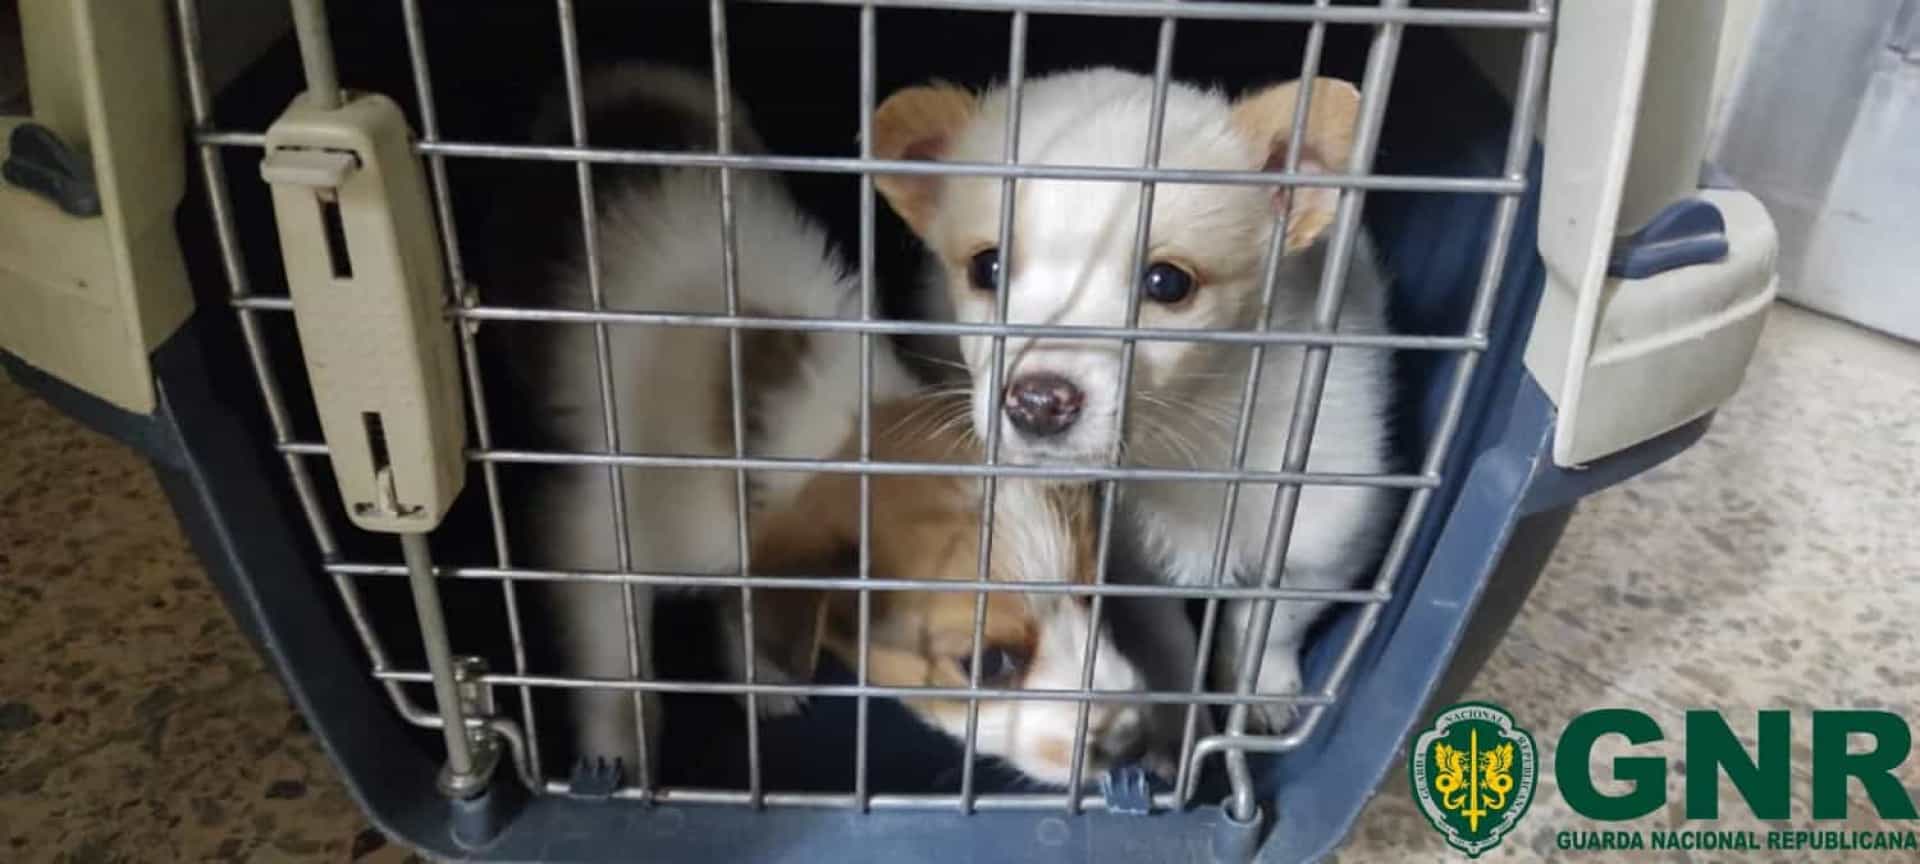 Cães recém-nascidos abandonados em Idanha-a-Nova